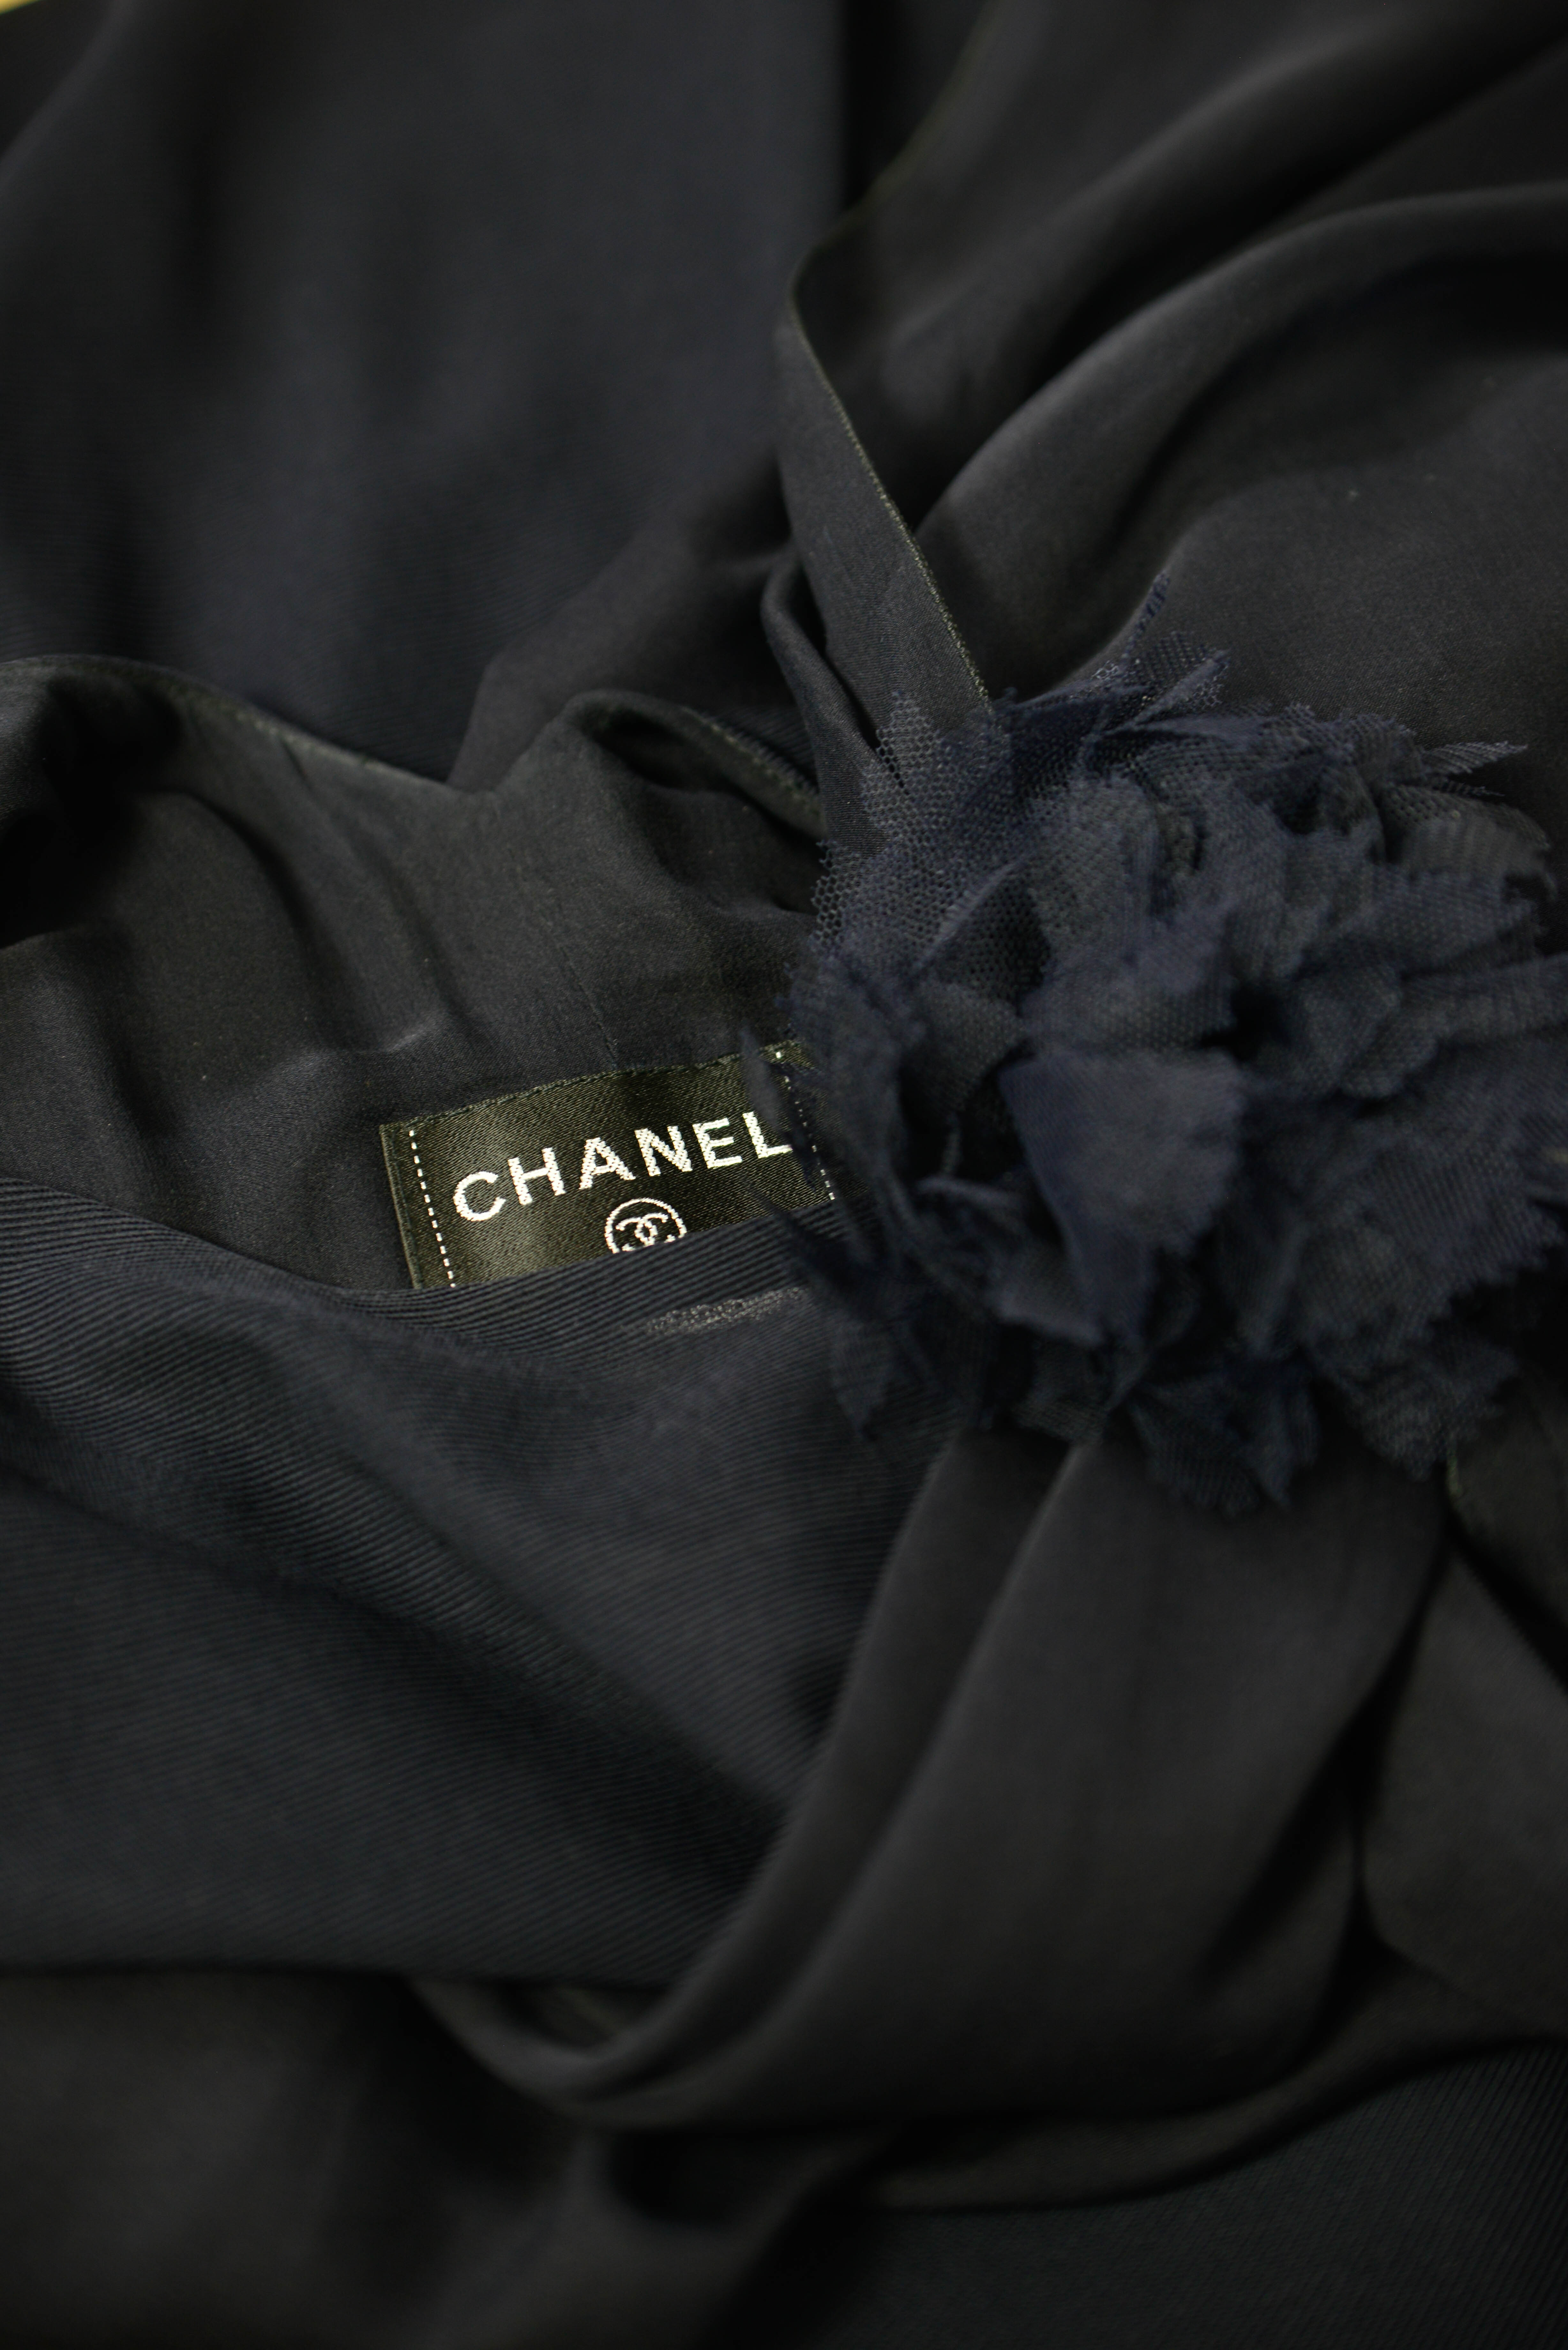 Chanel Abendkleid in dunkelblau in der Groesse 38 Detailansicht vom Logo